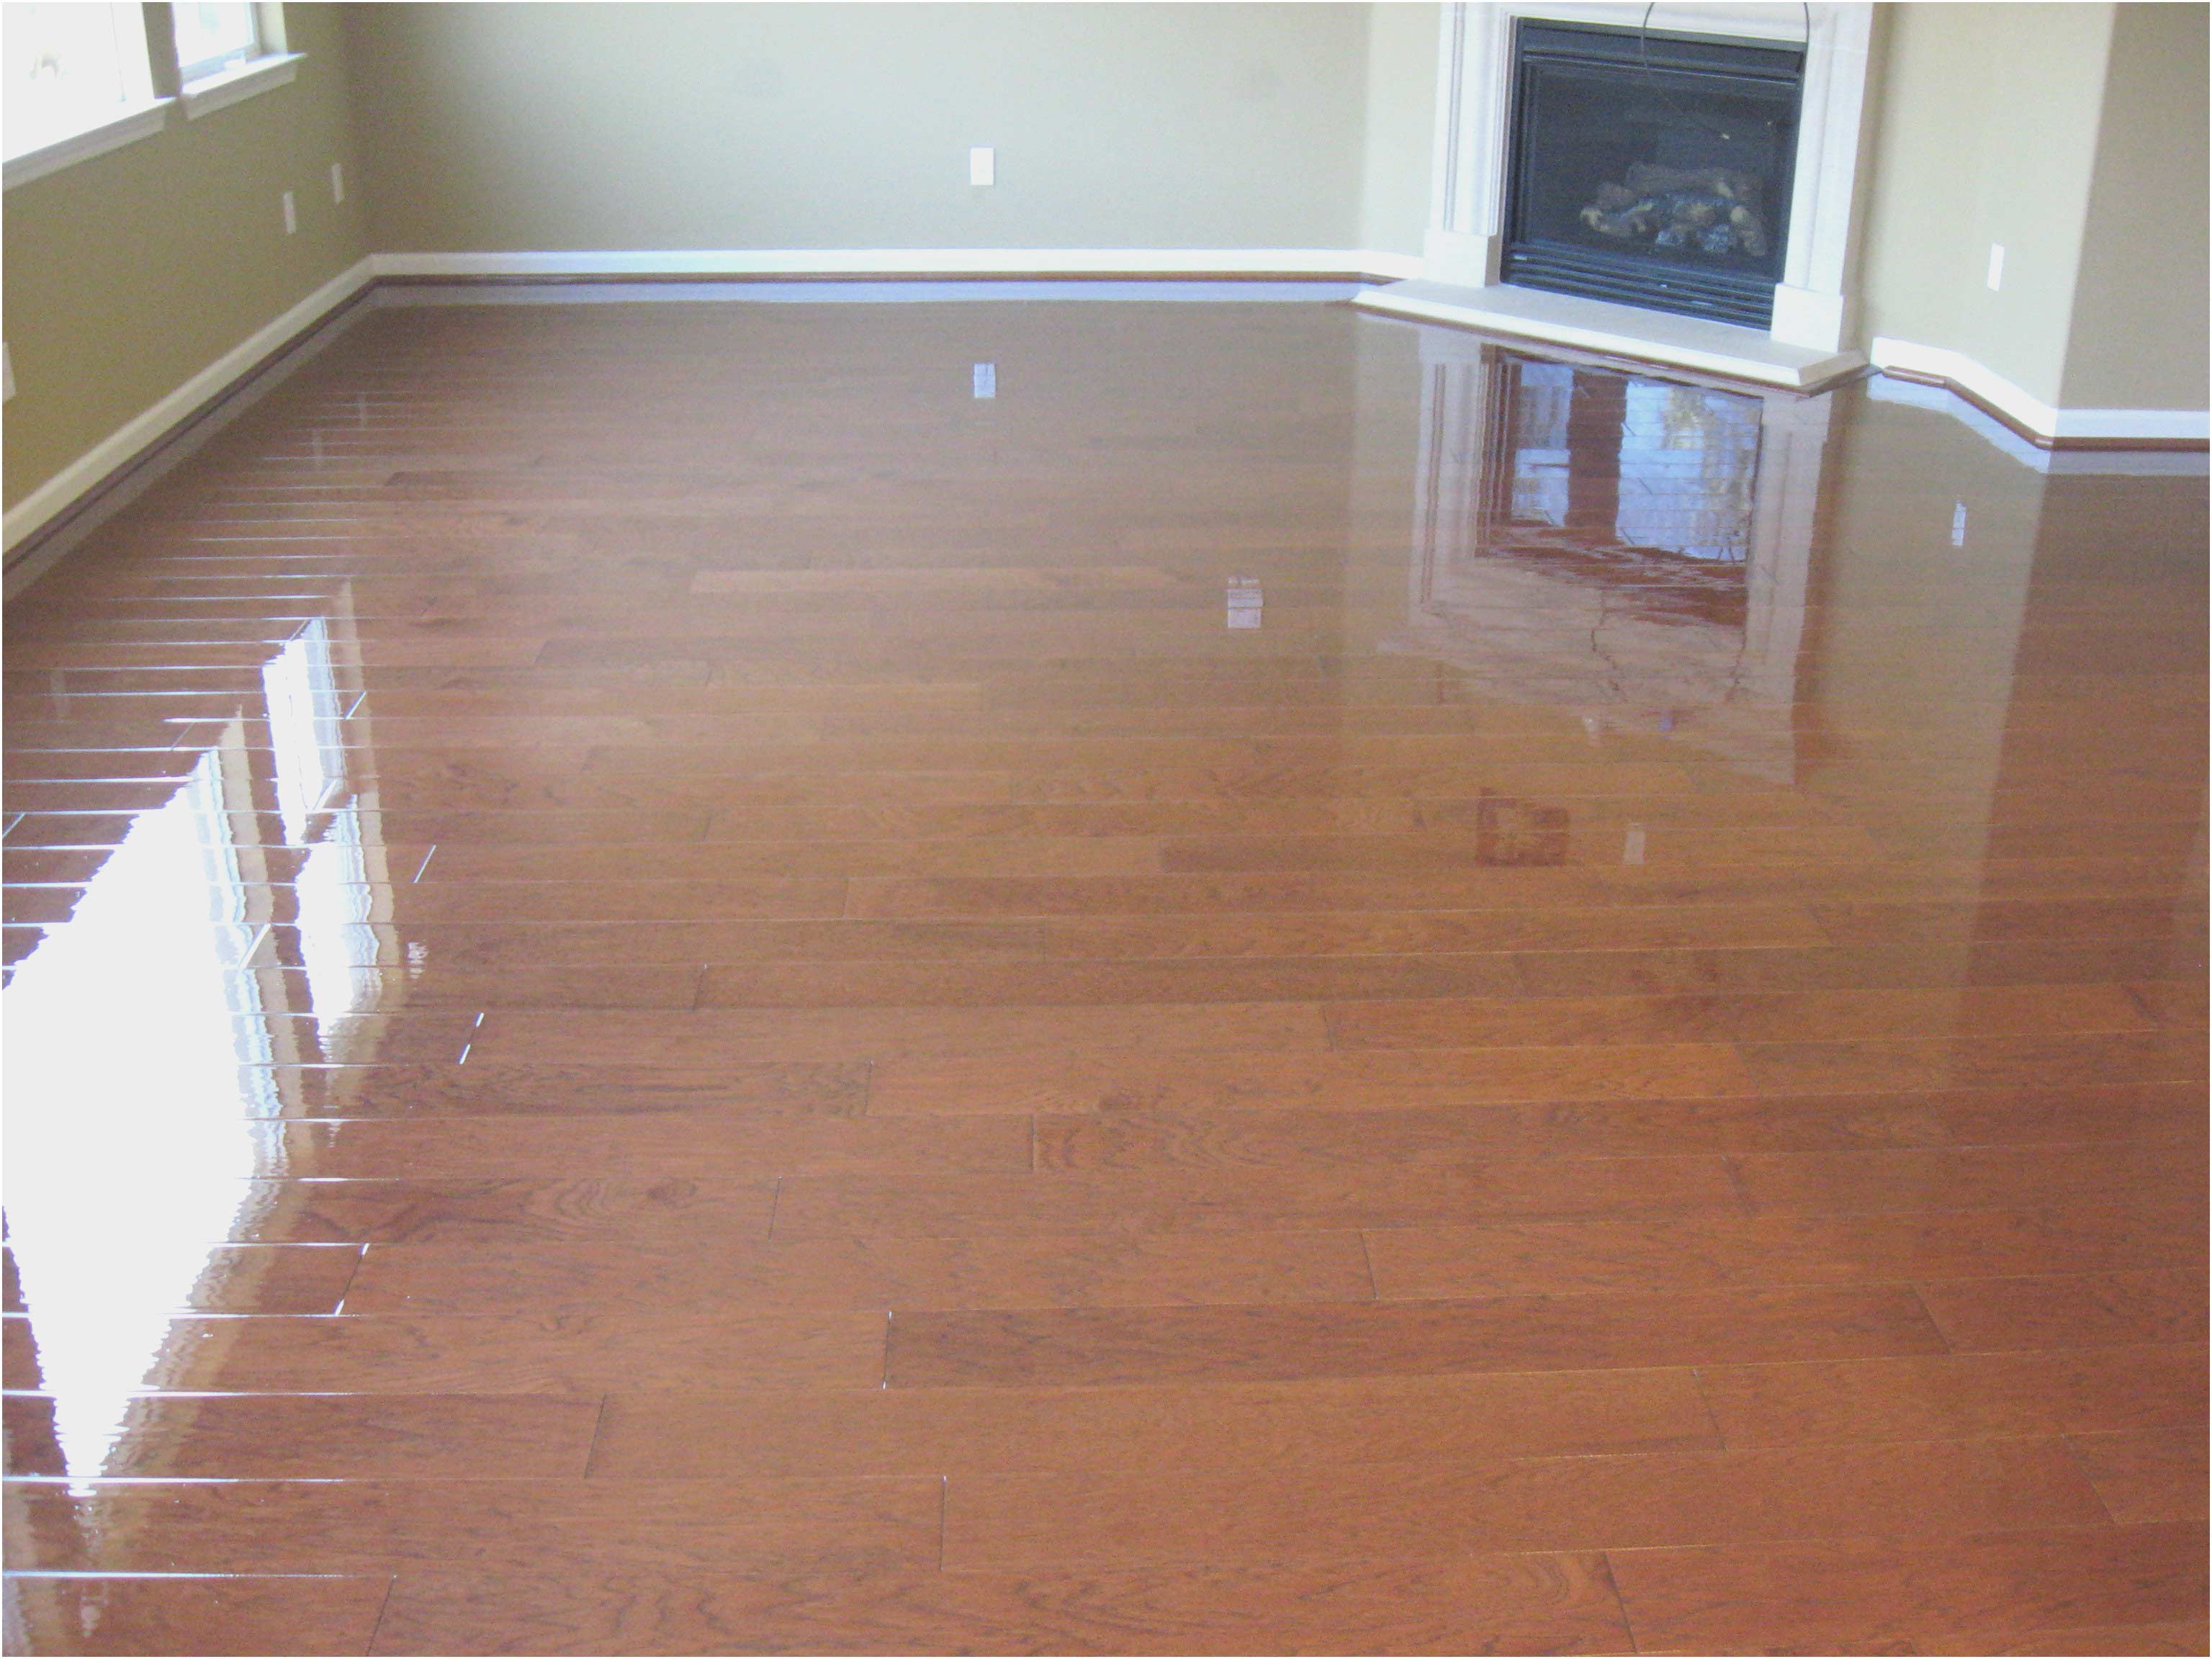 Cleaning Engineered Hardwood Floors Tips In Easiest Way